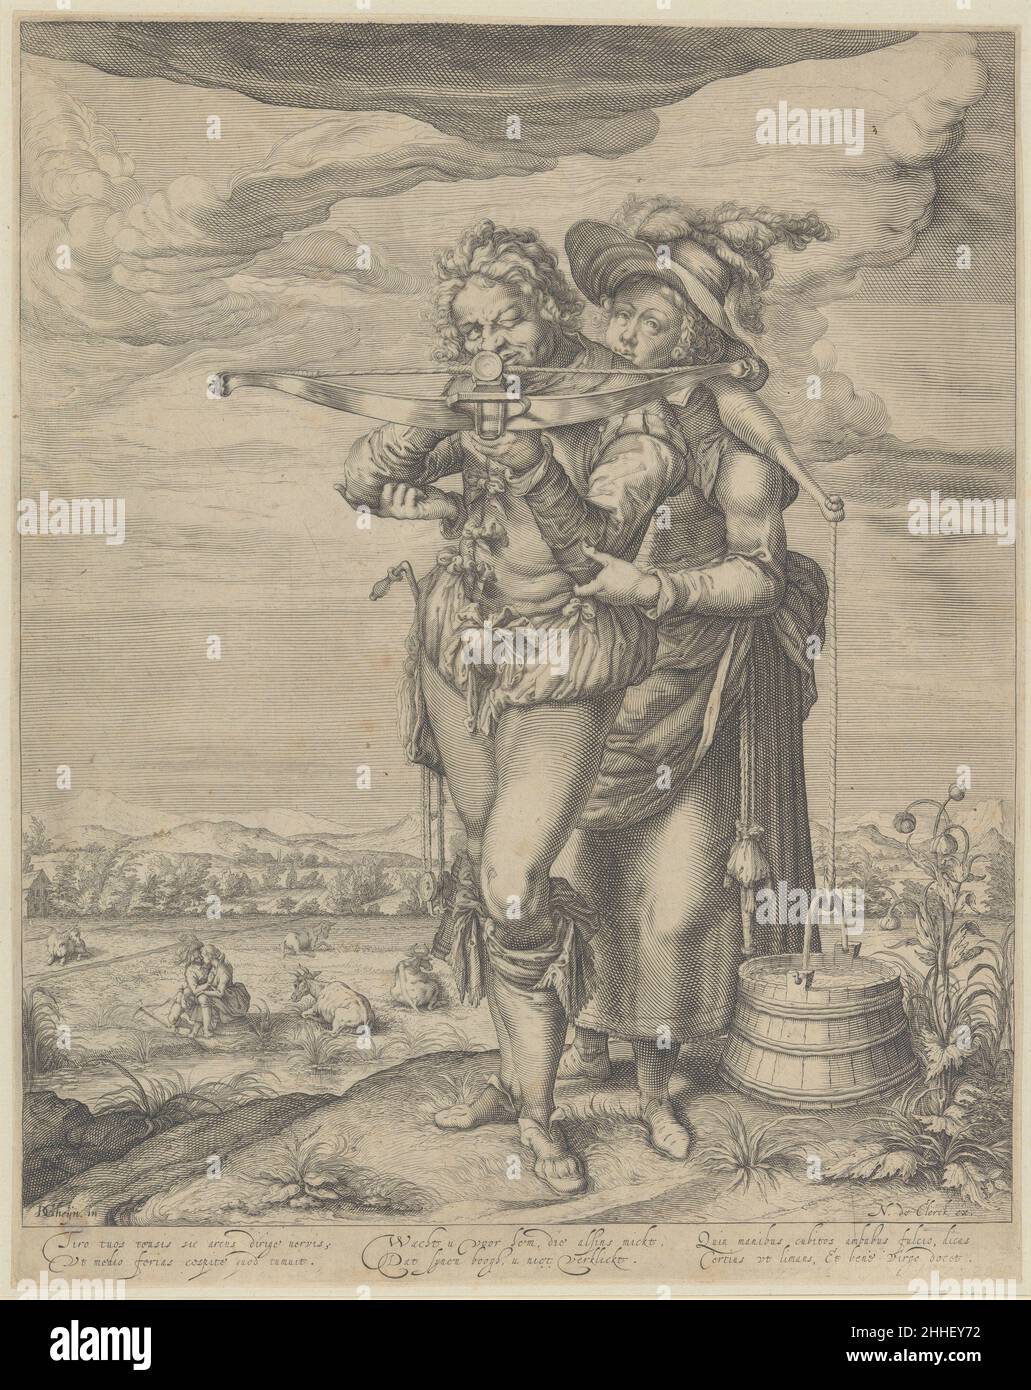 Der Bogenschütze und die Milchmaid Ca. 1610 nach Jacques de Gheyn II Niederlandisch behandelt der gut gezüchtete Künstler Jacques de Gheyn das Thema Milchmädchen mit mehr Umsicht, als es in den populären Drucken der Zeit zu finden ist. Ein Bogenschütze mit einem wulstigen Codpiece richtet seine Armbrust direkt auf den Betrachter, wie Amor uns zwischen die Augen schlägt. Der Bogenschütze und sein hilfsbereiter Begleiter (der seinen Hut trägt) tauchen im linken Hintergrund wieder als Liebhaber auf, wo ein Hengst (vermutlich) eine Stute anglößt. De Gheyn bezieht sich auf Slang-Ausdrücke wie „verzapfen“ (siehe 41,1.24) und „Ihren Bolzen anschlagen“. Die Inschriften waren probabl Stockfoto